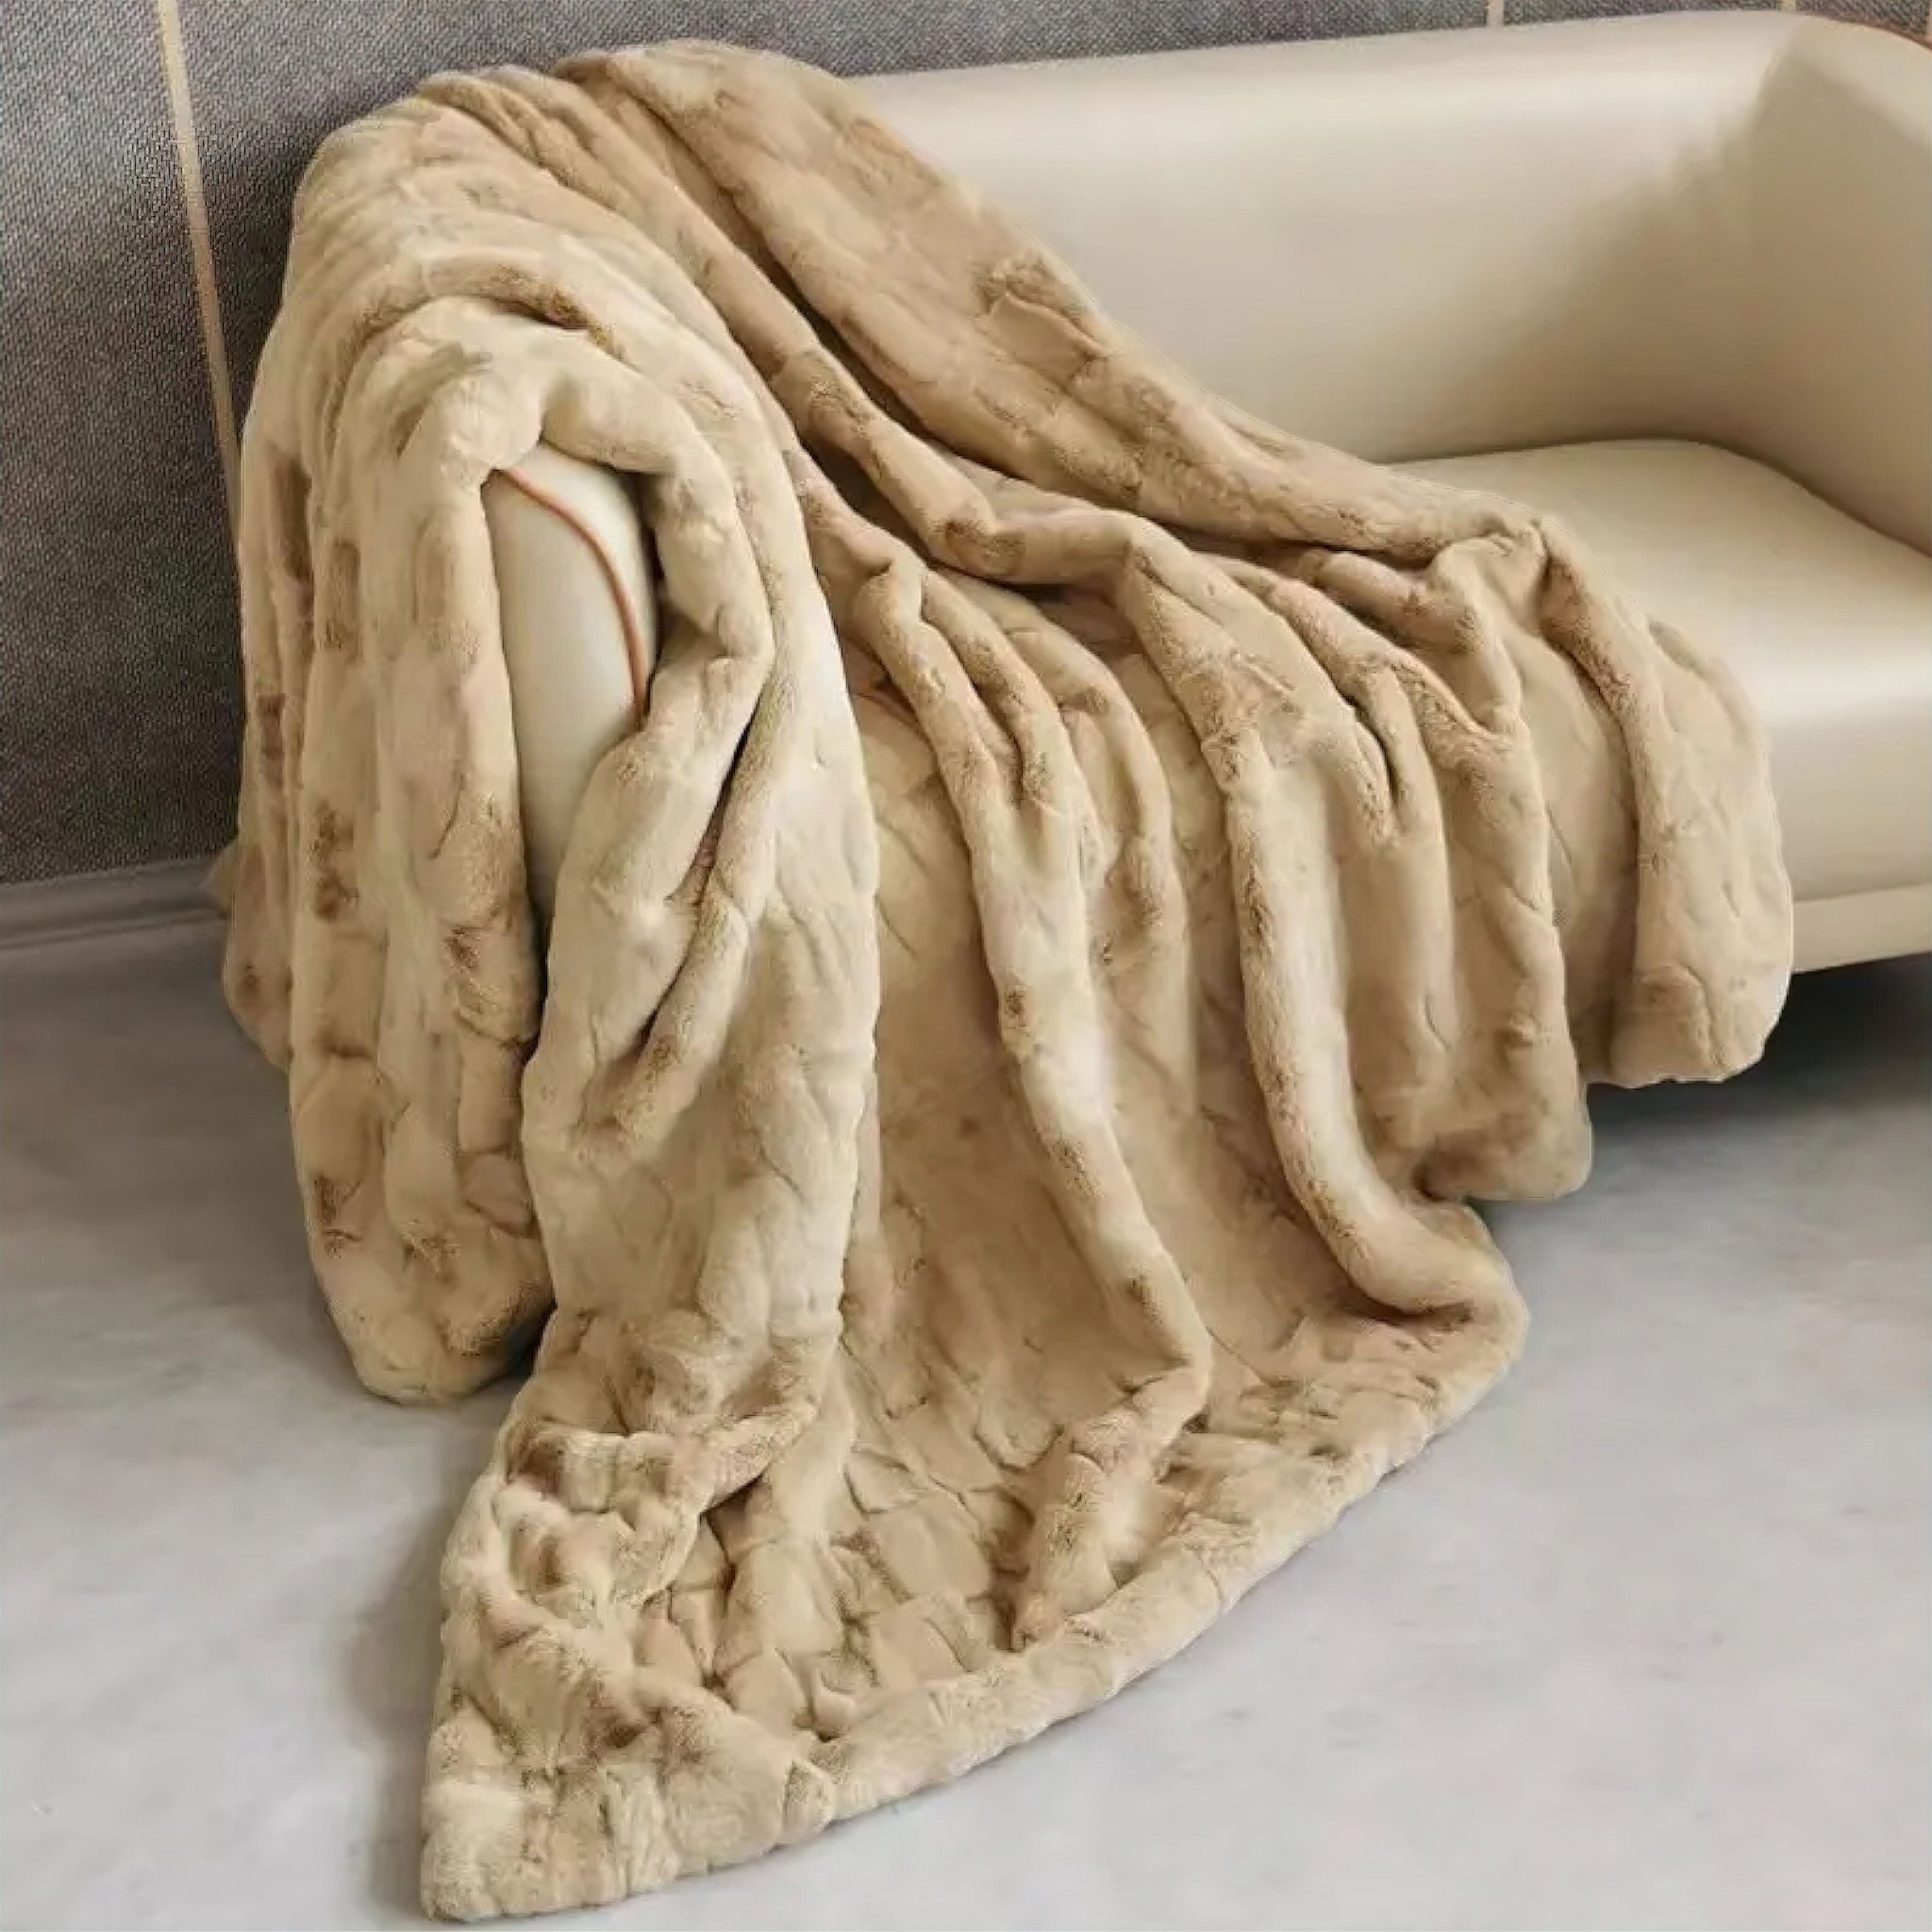 Lawrence Fur Blanket Camel 60 x 150cm 